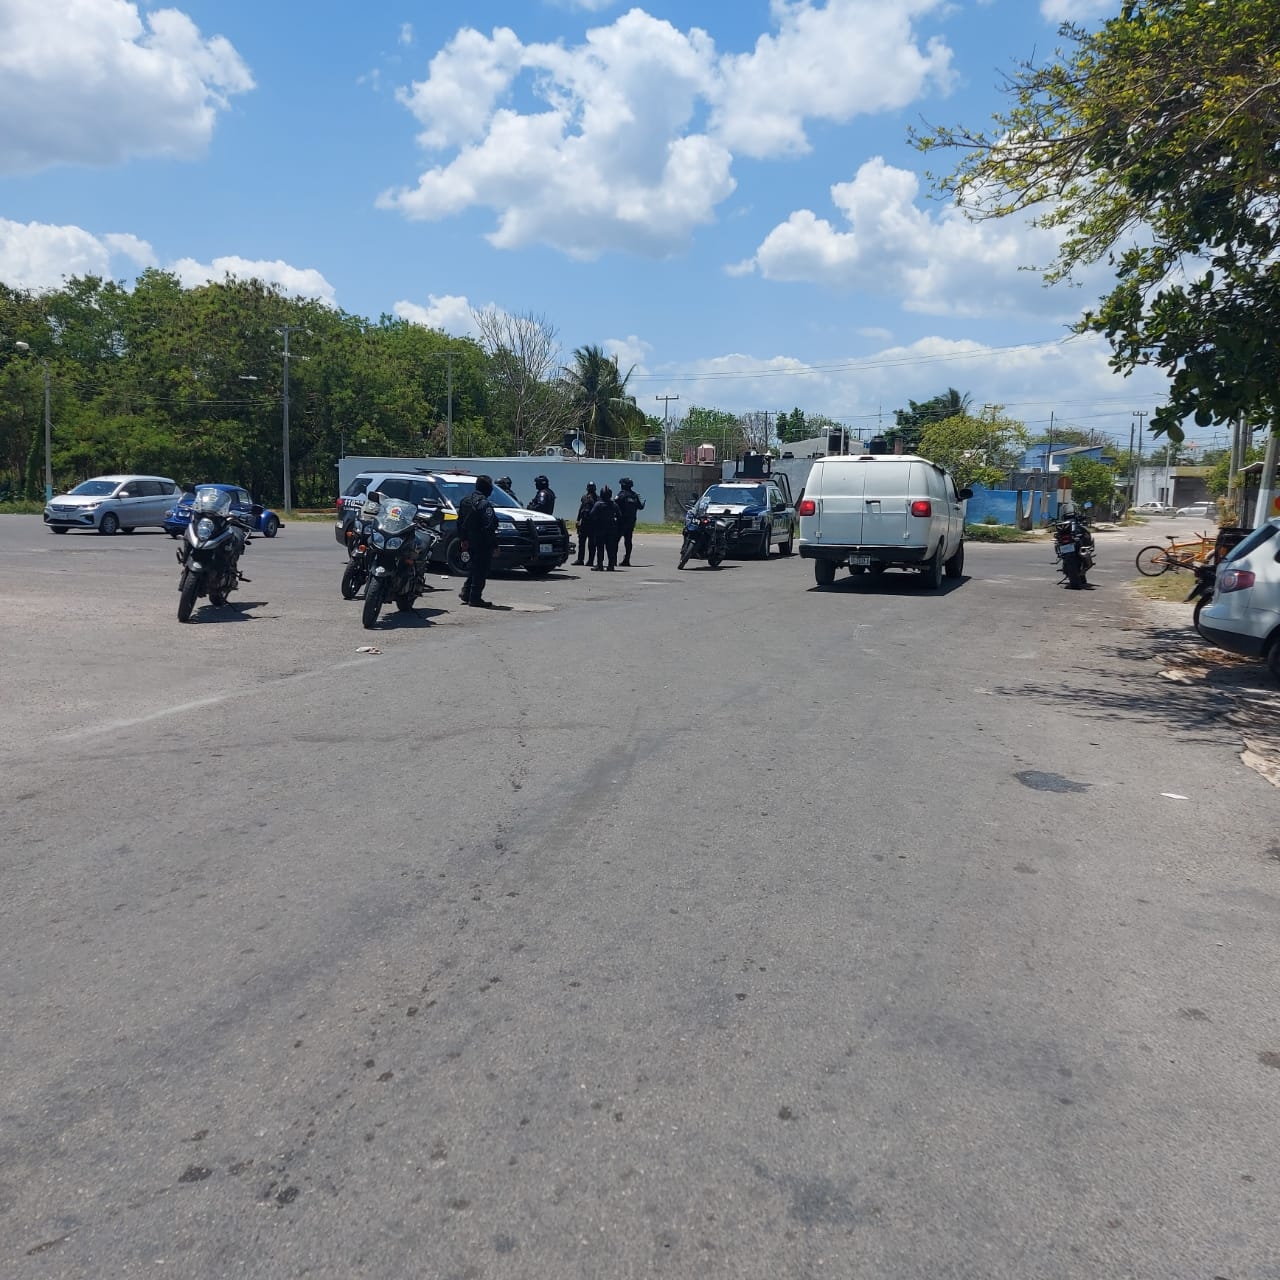 La camioneta blanca fue alcanzada por policías frente al Mercado Municipal de Chetumal, tras una persecución en la ciudad